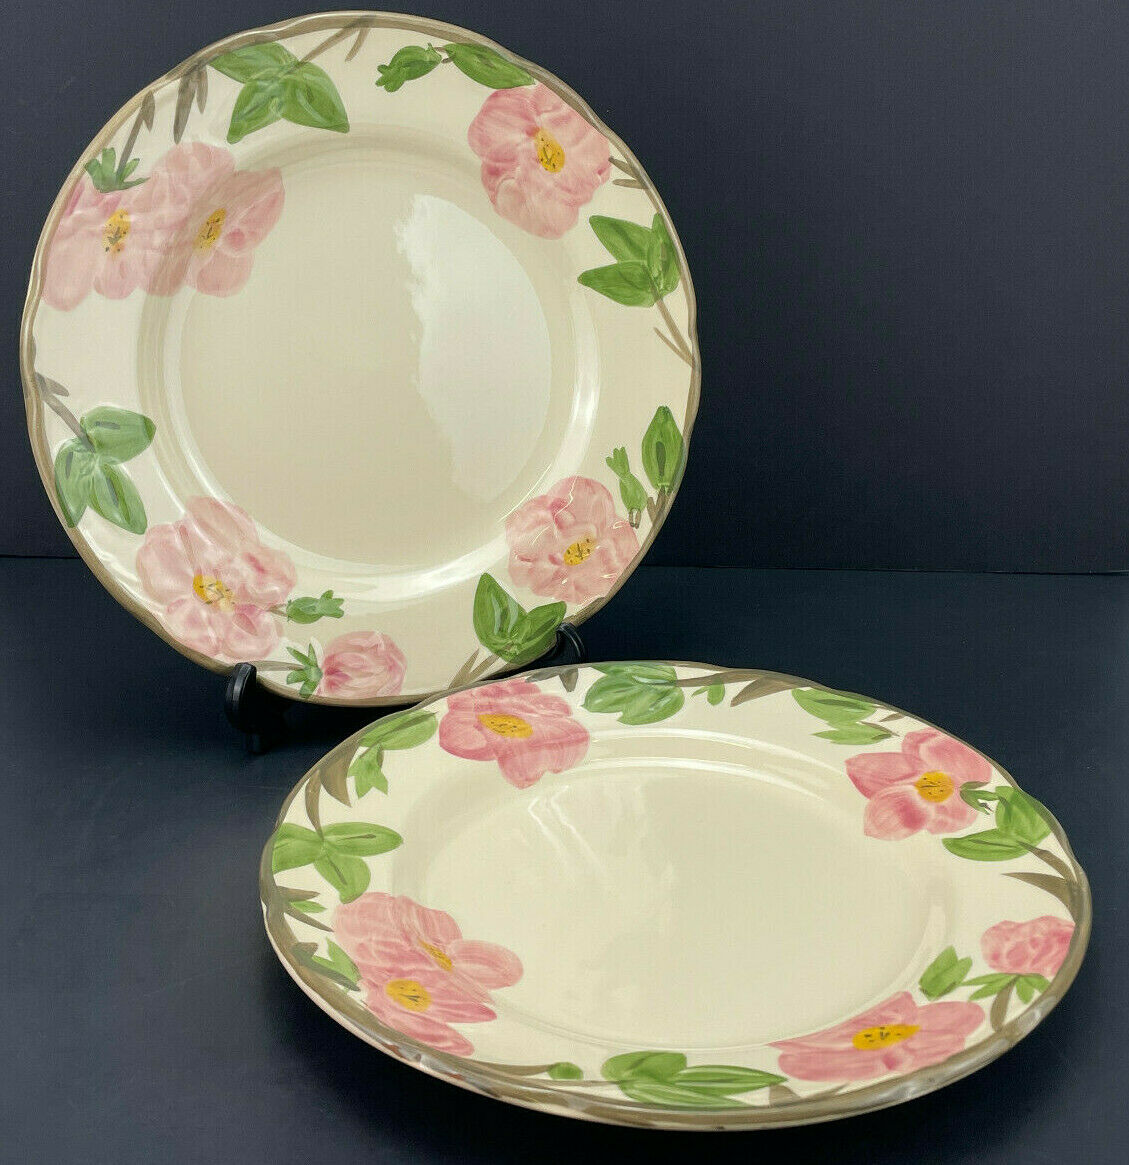 Vintage Set Of 2 Franciscan Desert Rose 10 7/8" Dinner Plates - Made In England!